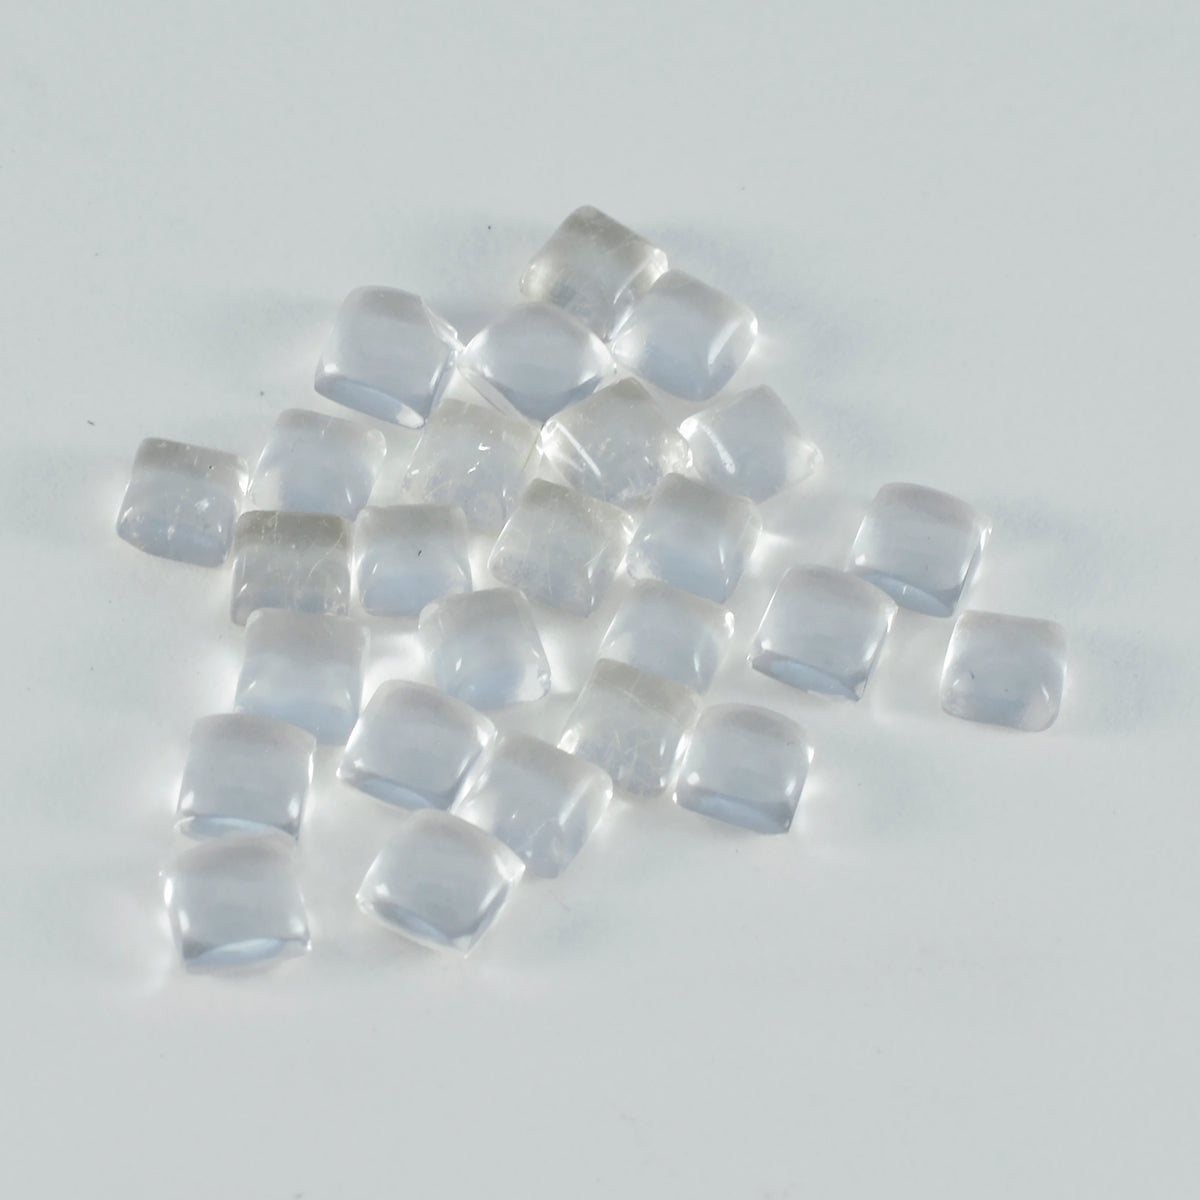 Riyogems 1PC White Crystal Quartz Cabochon 5x5 mm Square Shape nice-looking Quality Gems